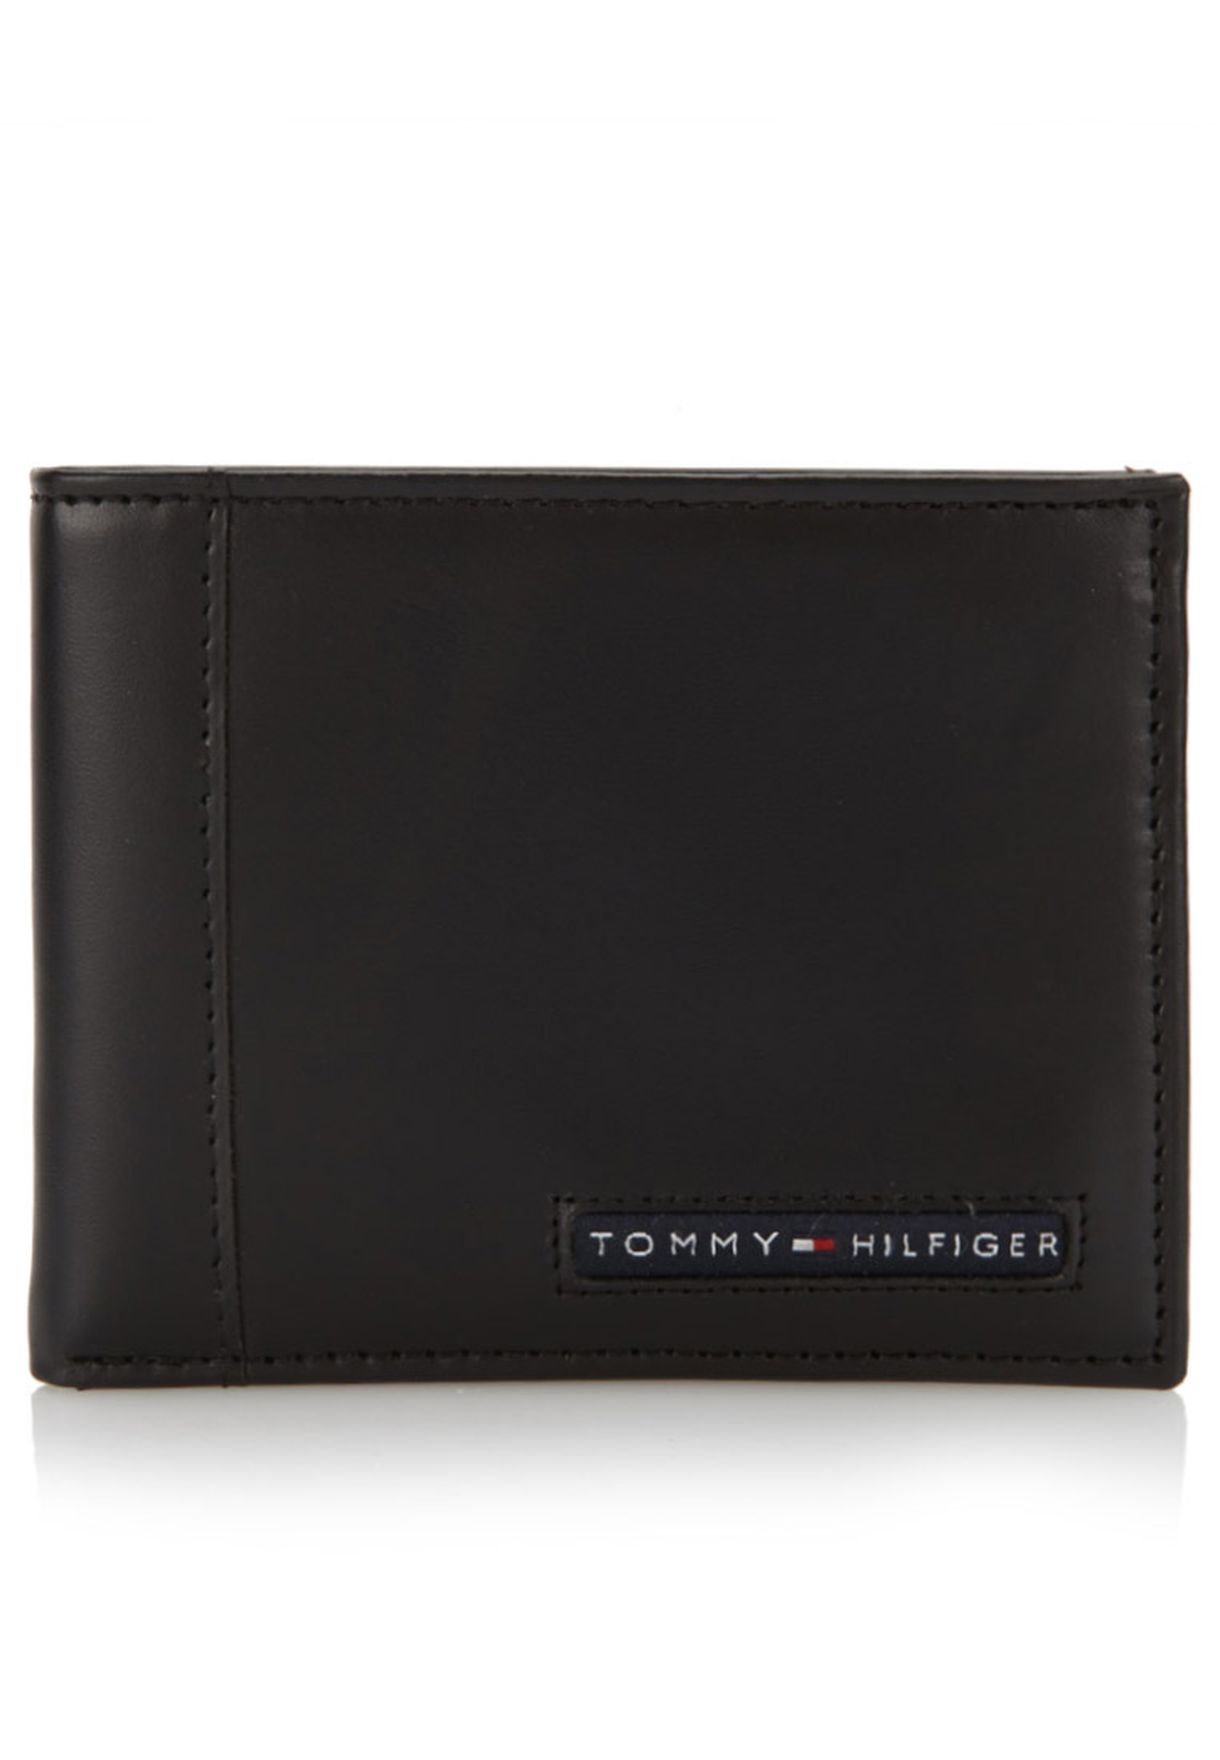 tommy hilfiger passcase billfold wallet